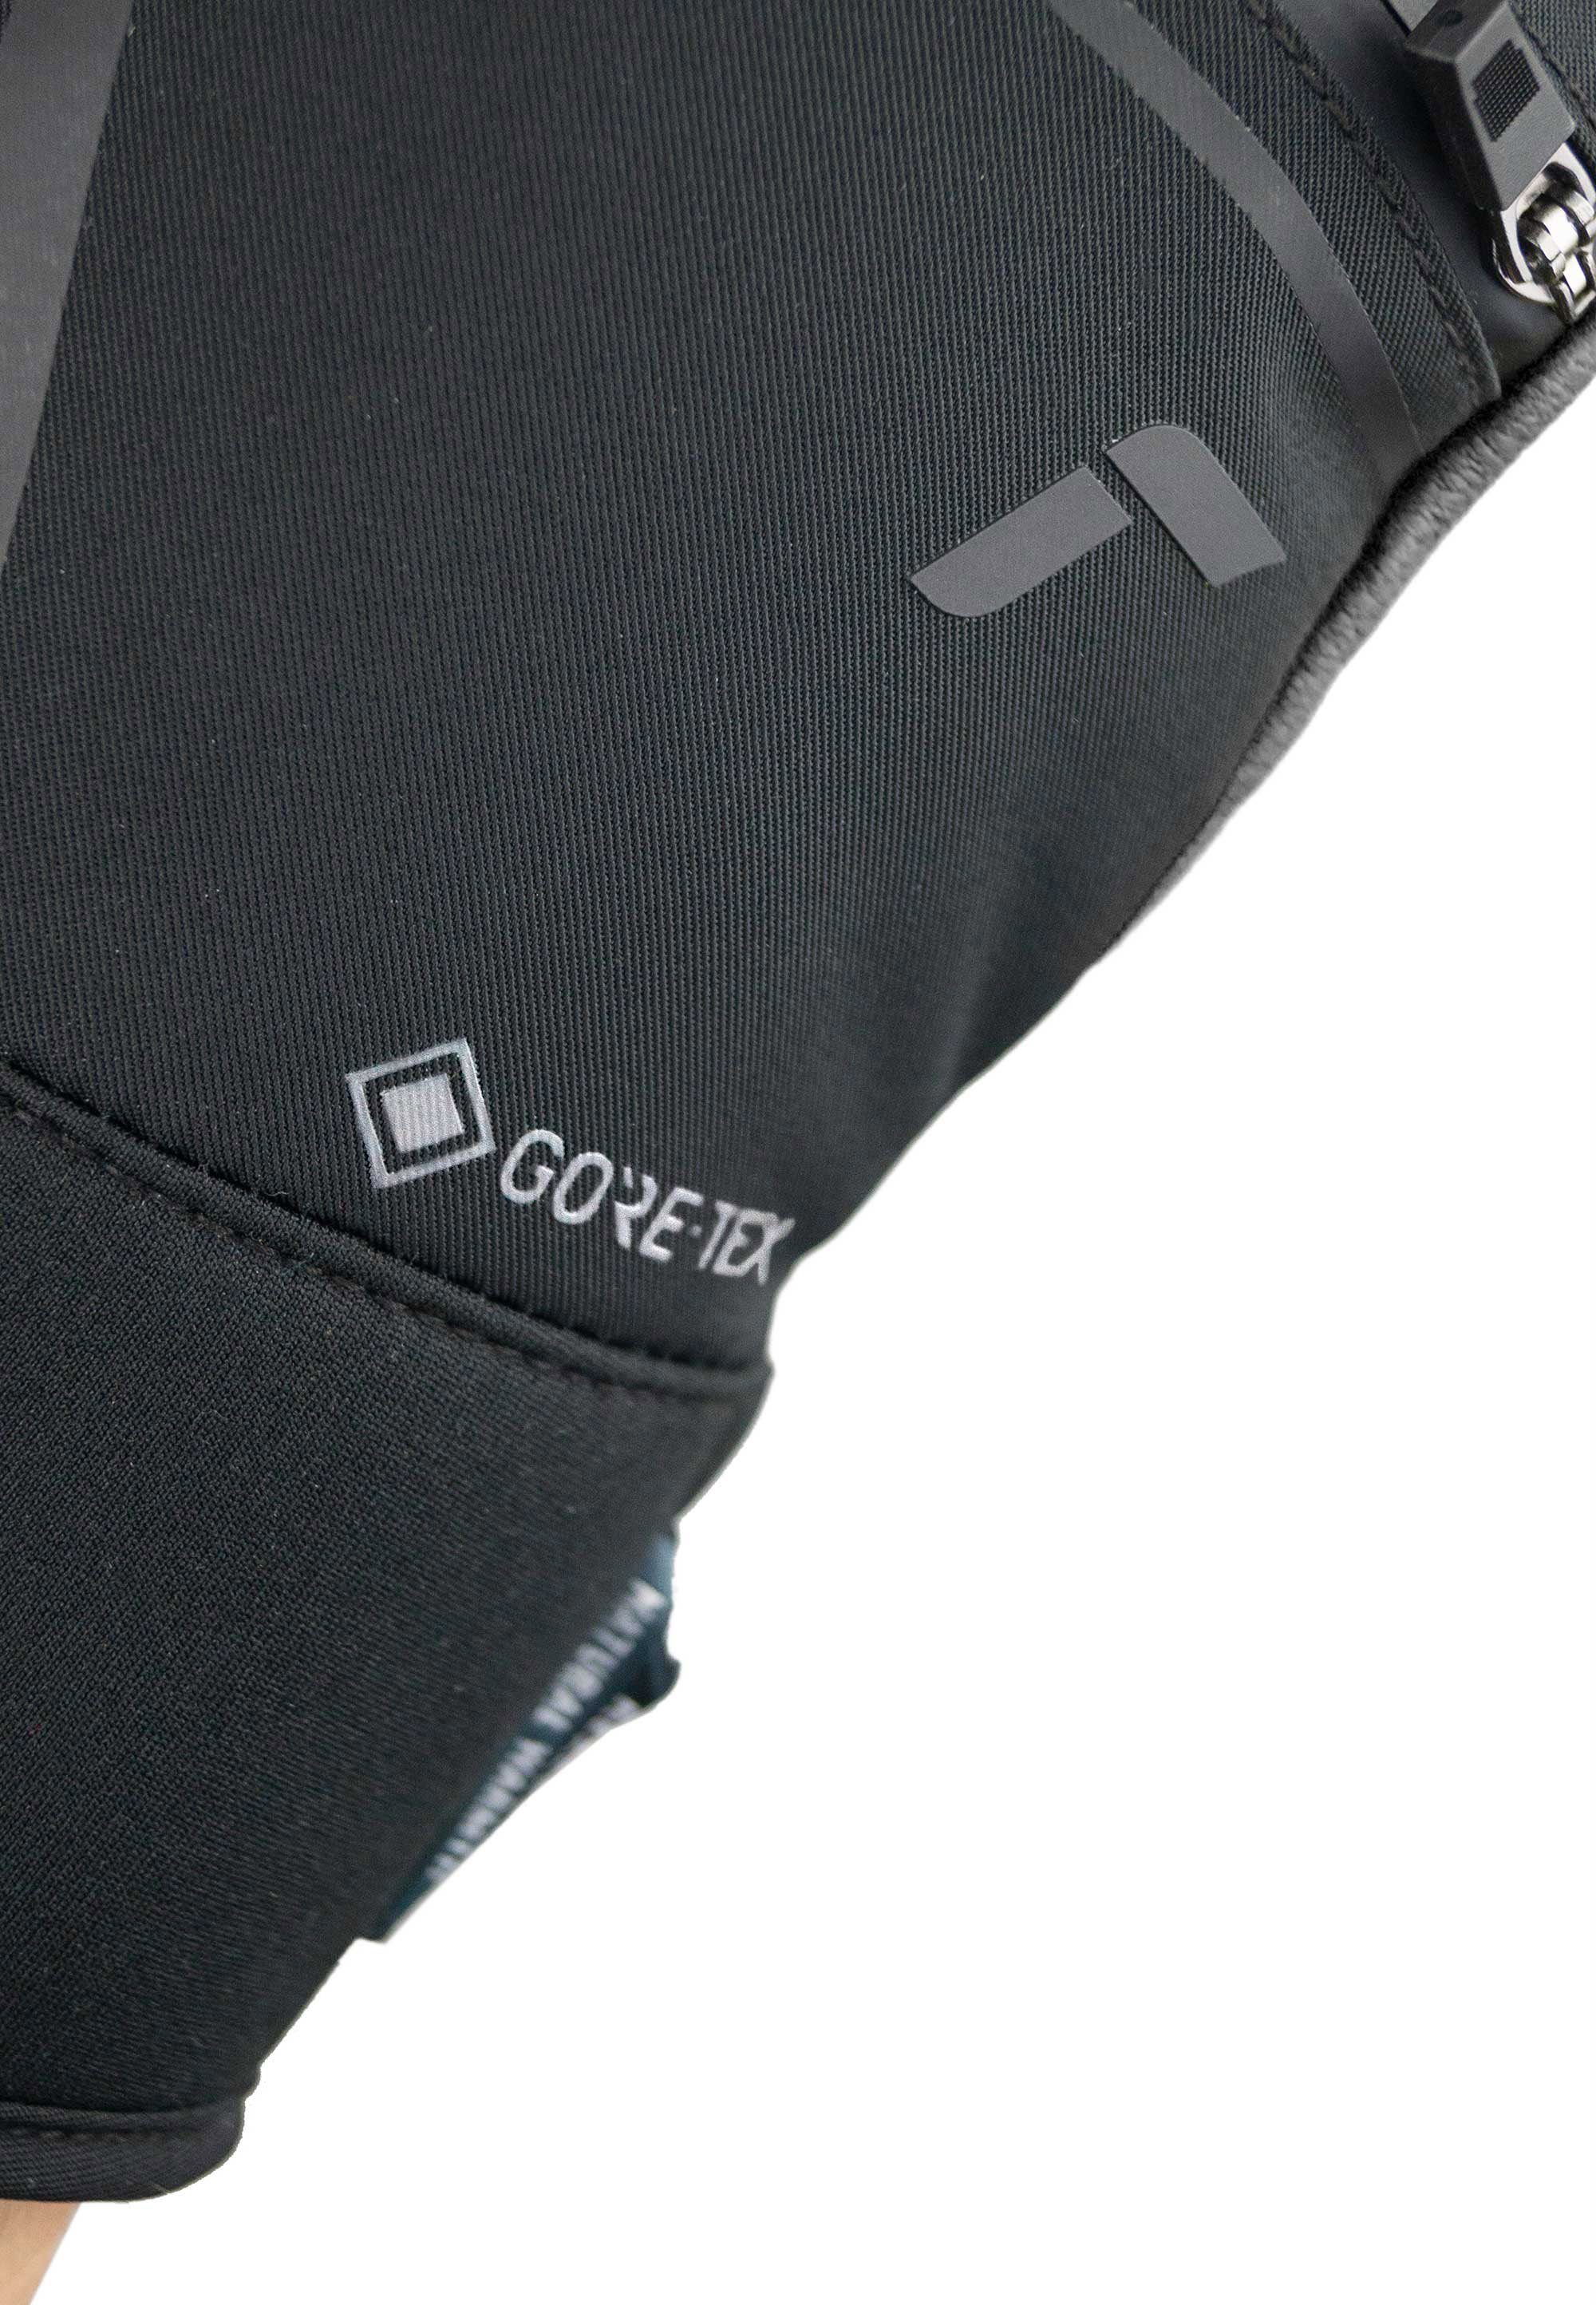 Spirit Reusch GORE-TEX verstärkten Fingerspitzen mit Down Skihandschuhe schwarz-silberfarben SC